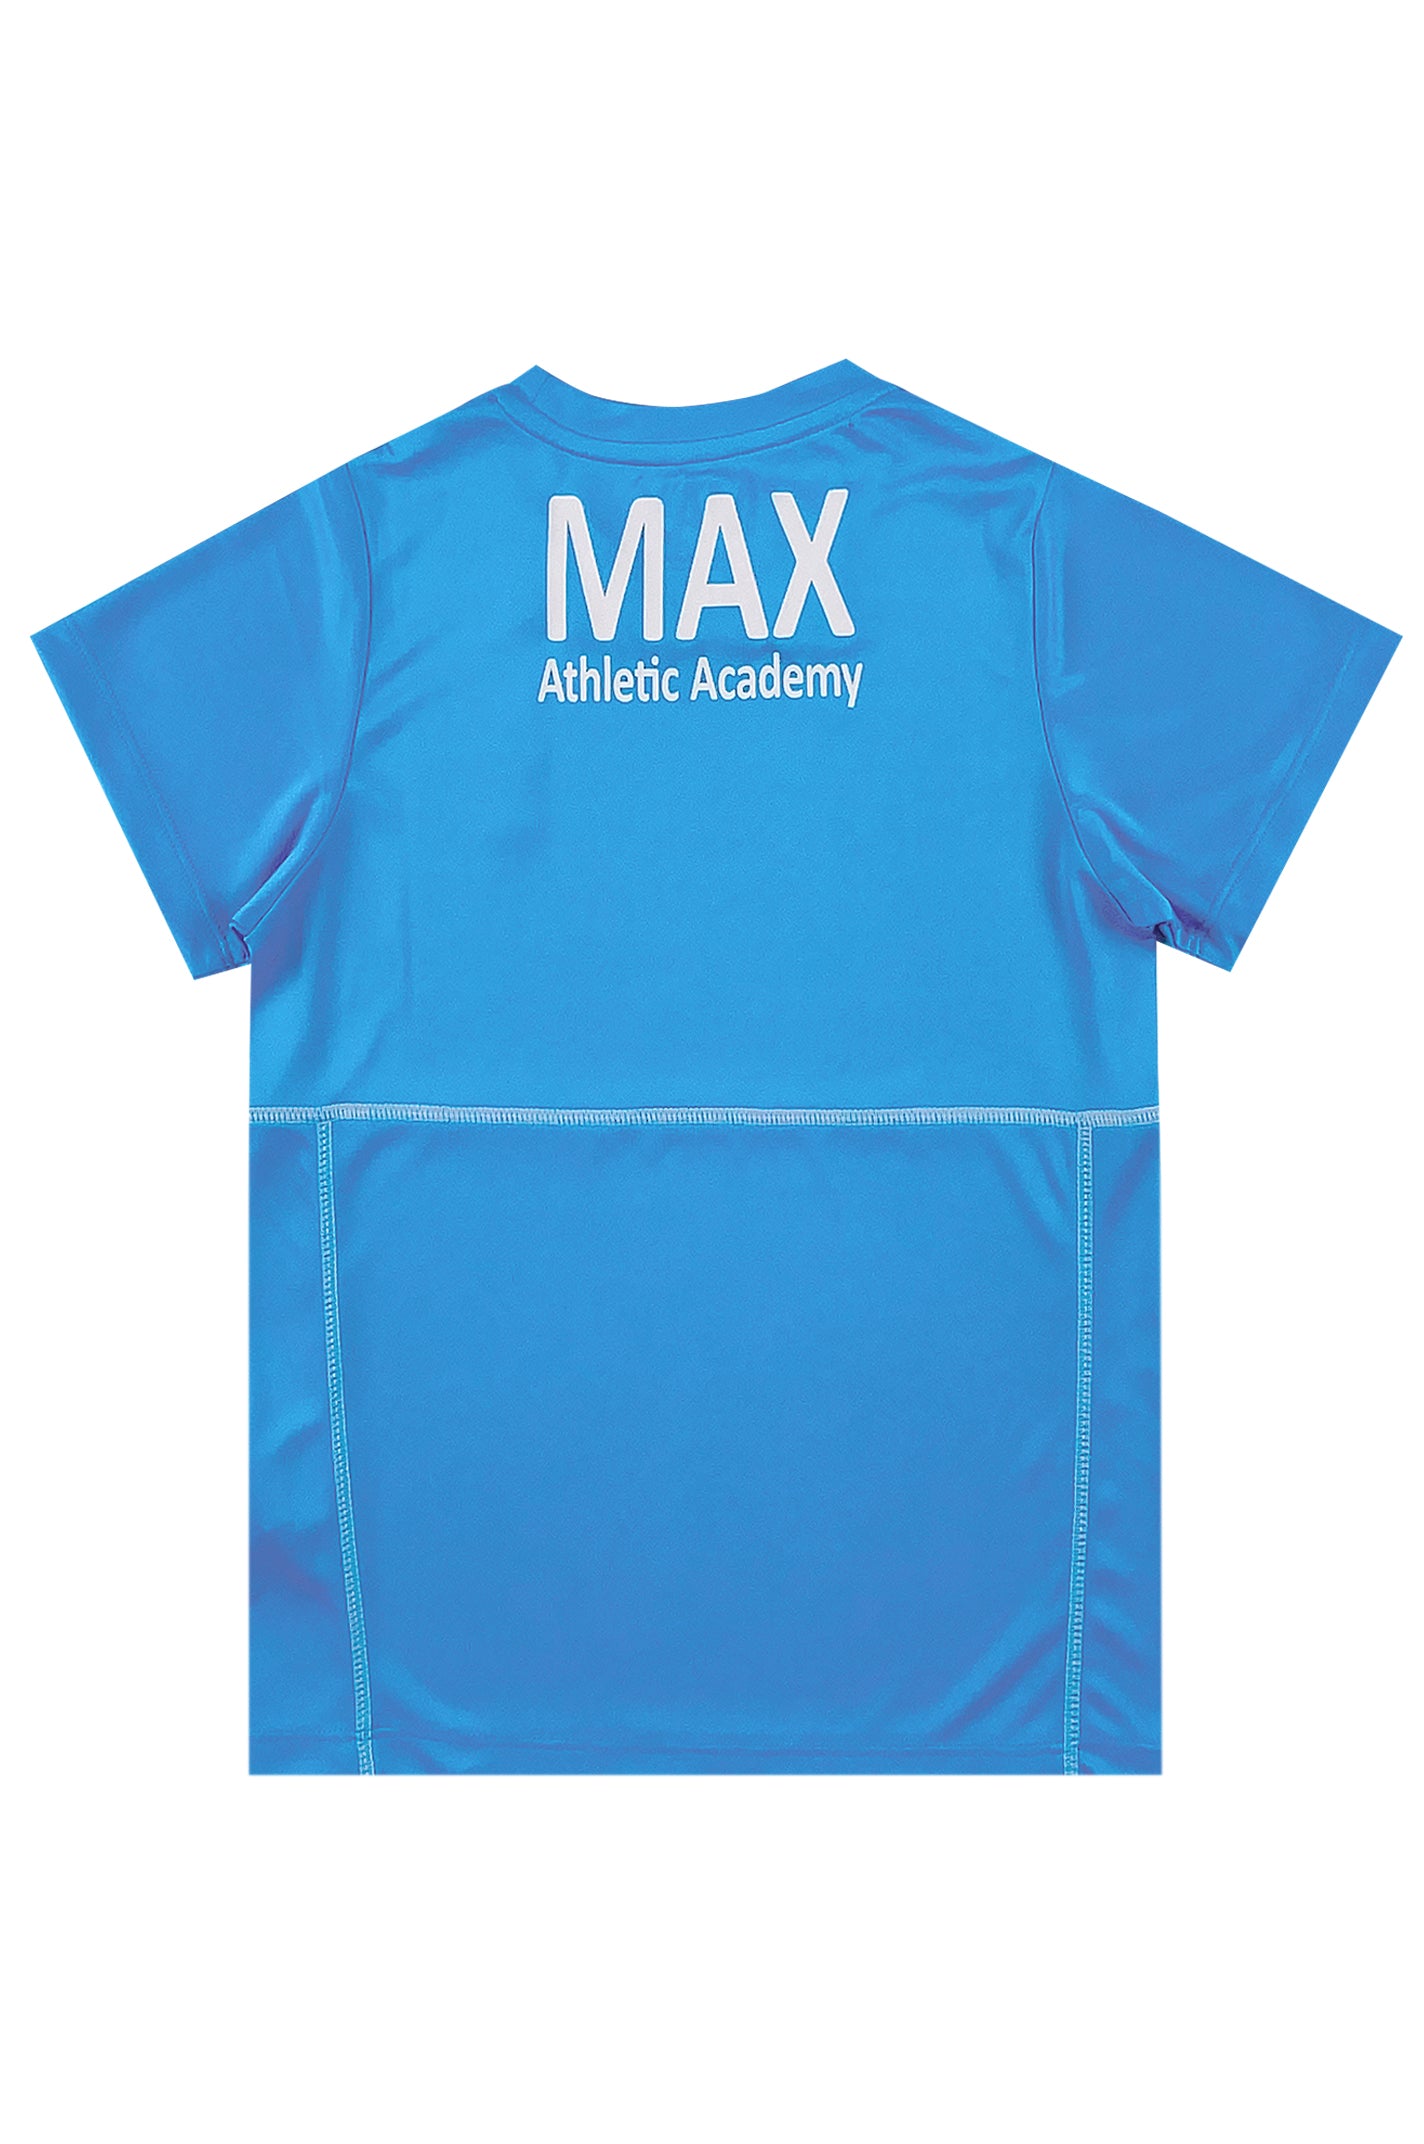 網上下單訂購藍色短袖T恤  圓領短袖T恤  T1120